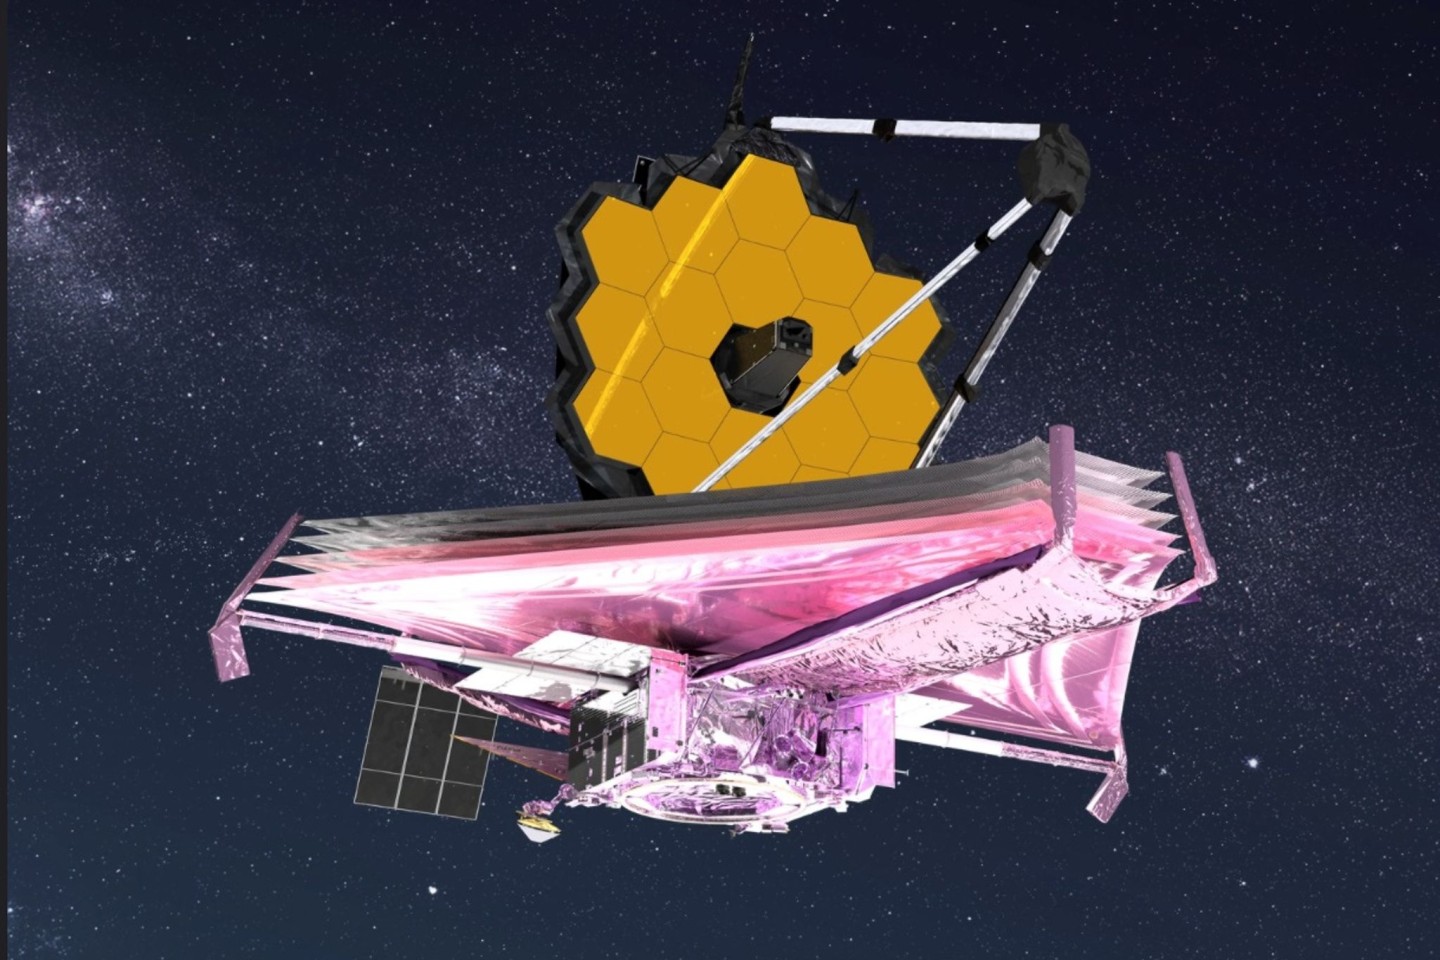 Diese künstlerische Darstellung des James Webb Weltraumteleskops im All zeigt alle Hauptelemente vollständig entfaltet.